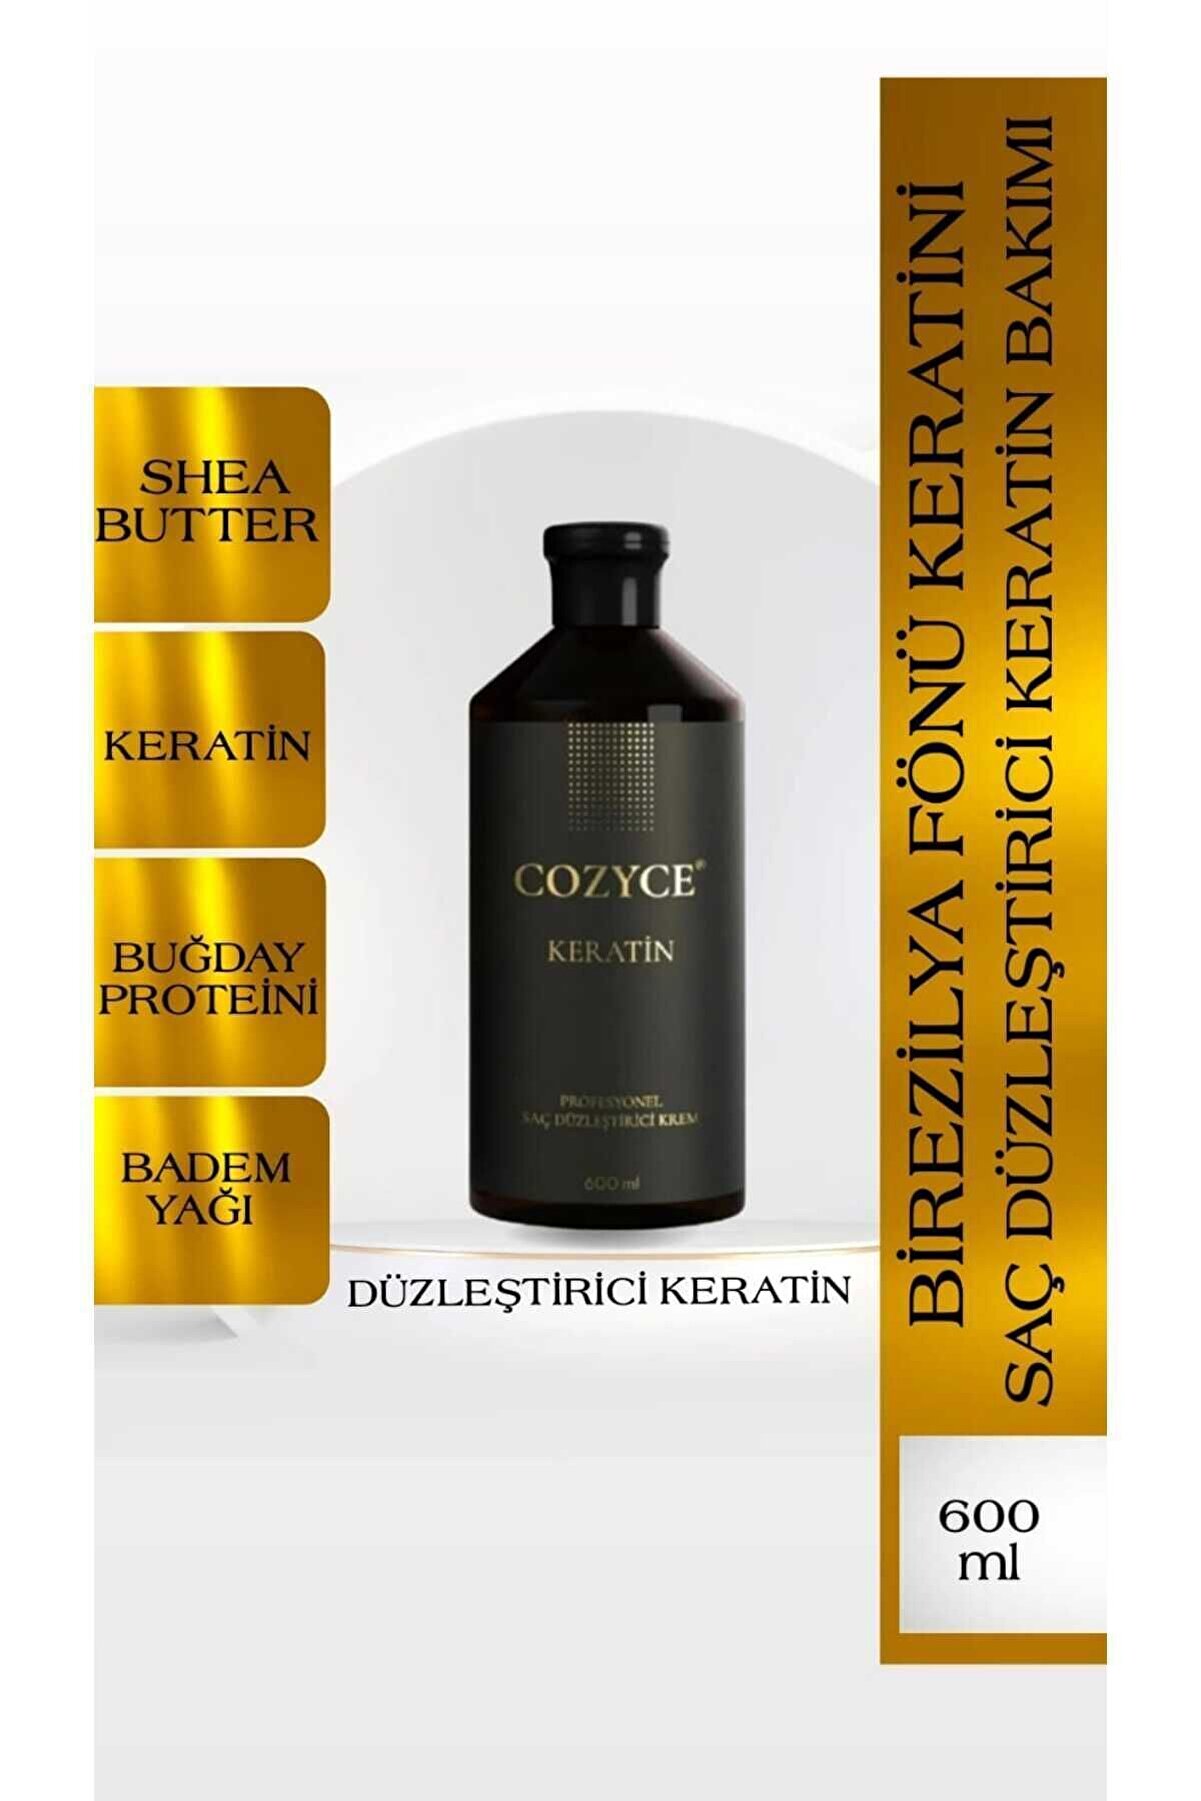 Cozyce Gold Brezilya Fönü Keratini Saç Düzleştirici Keratin Bakımı 600 ml Koku